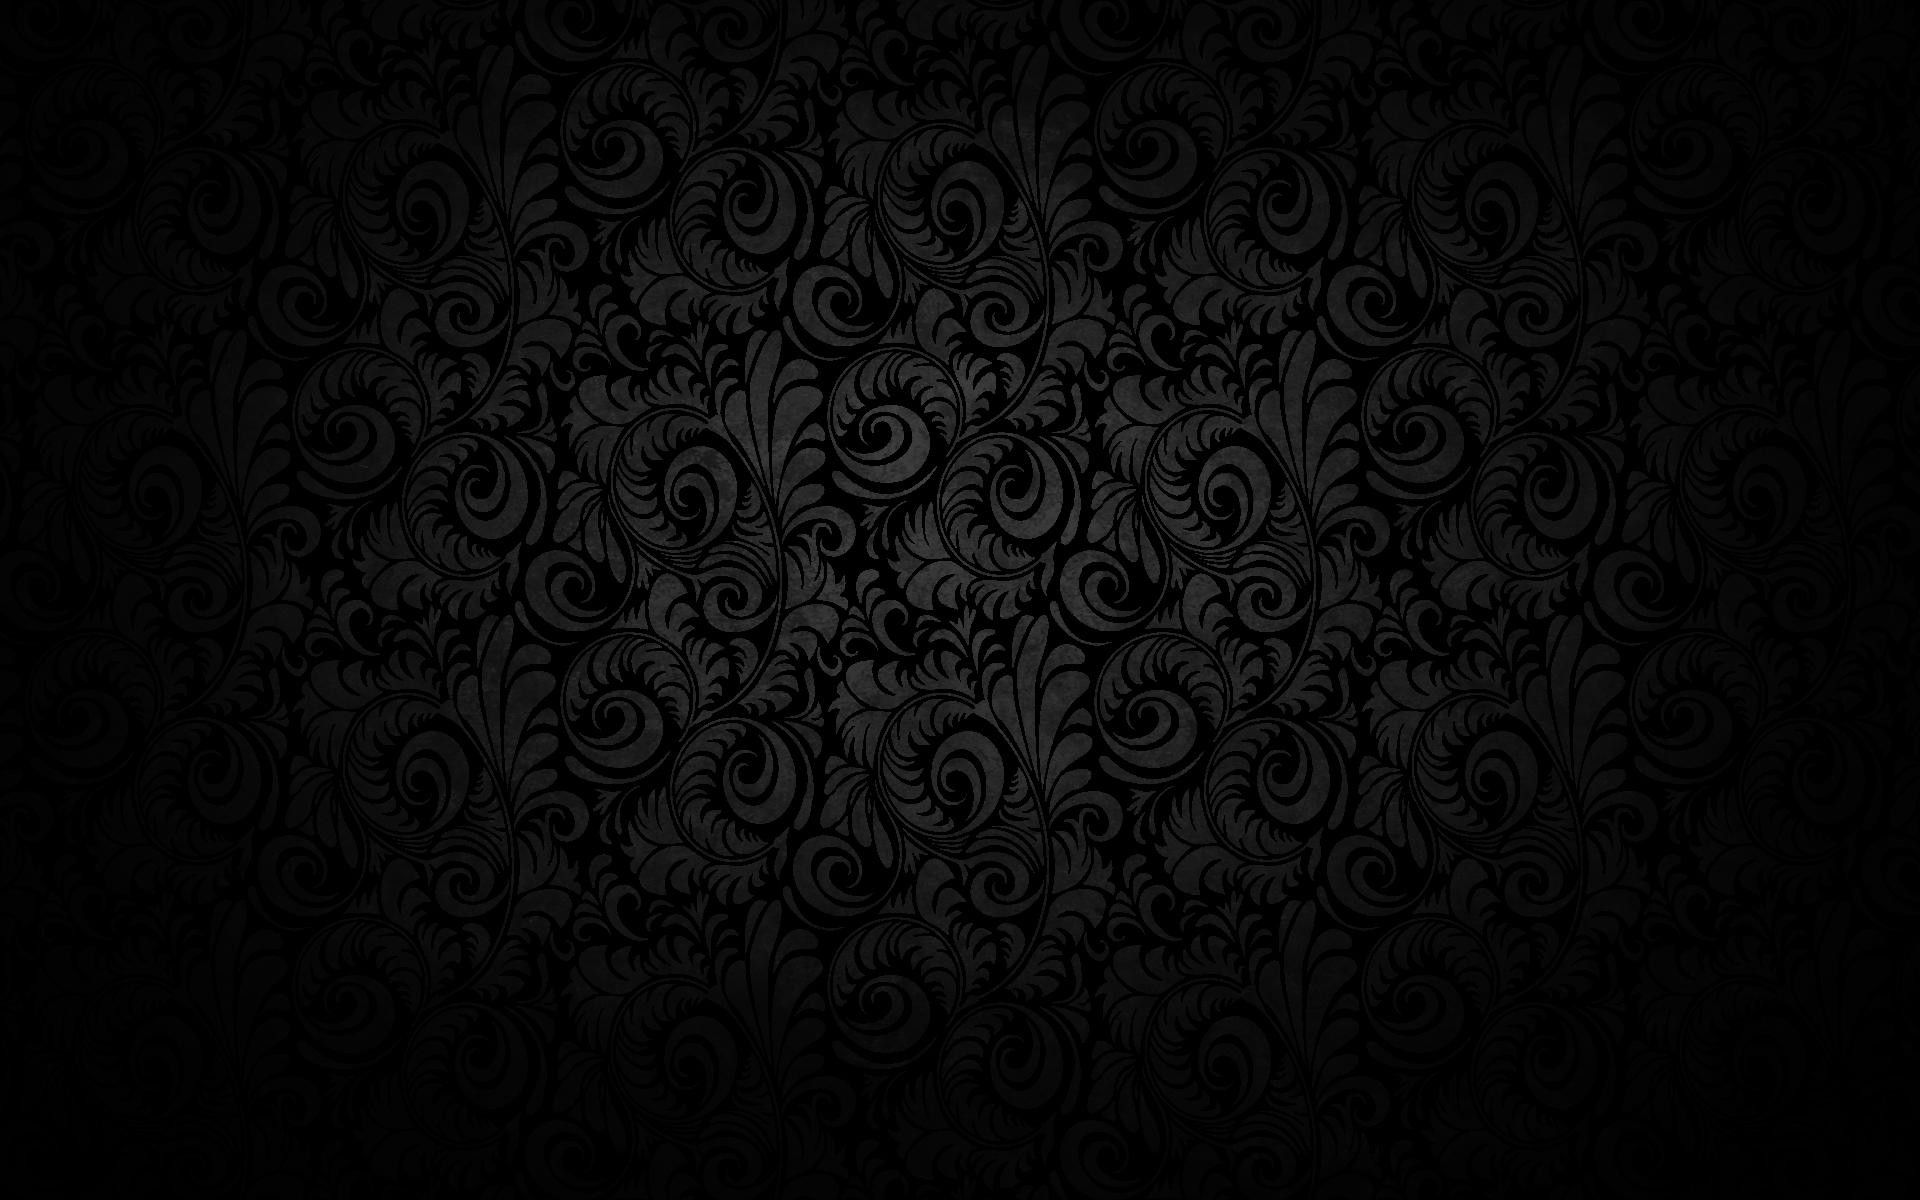 Dark Gothic Wallpaper On